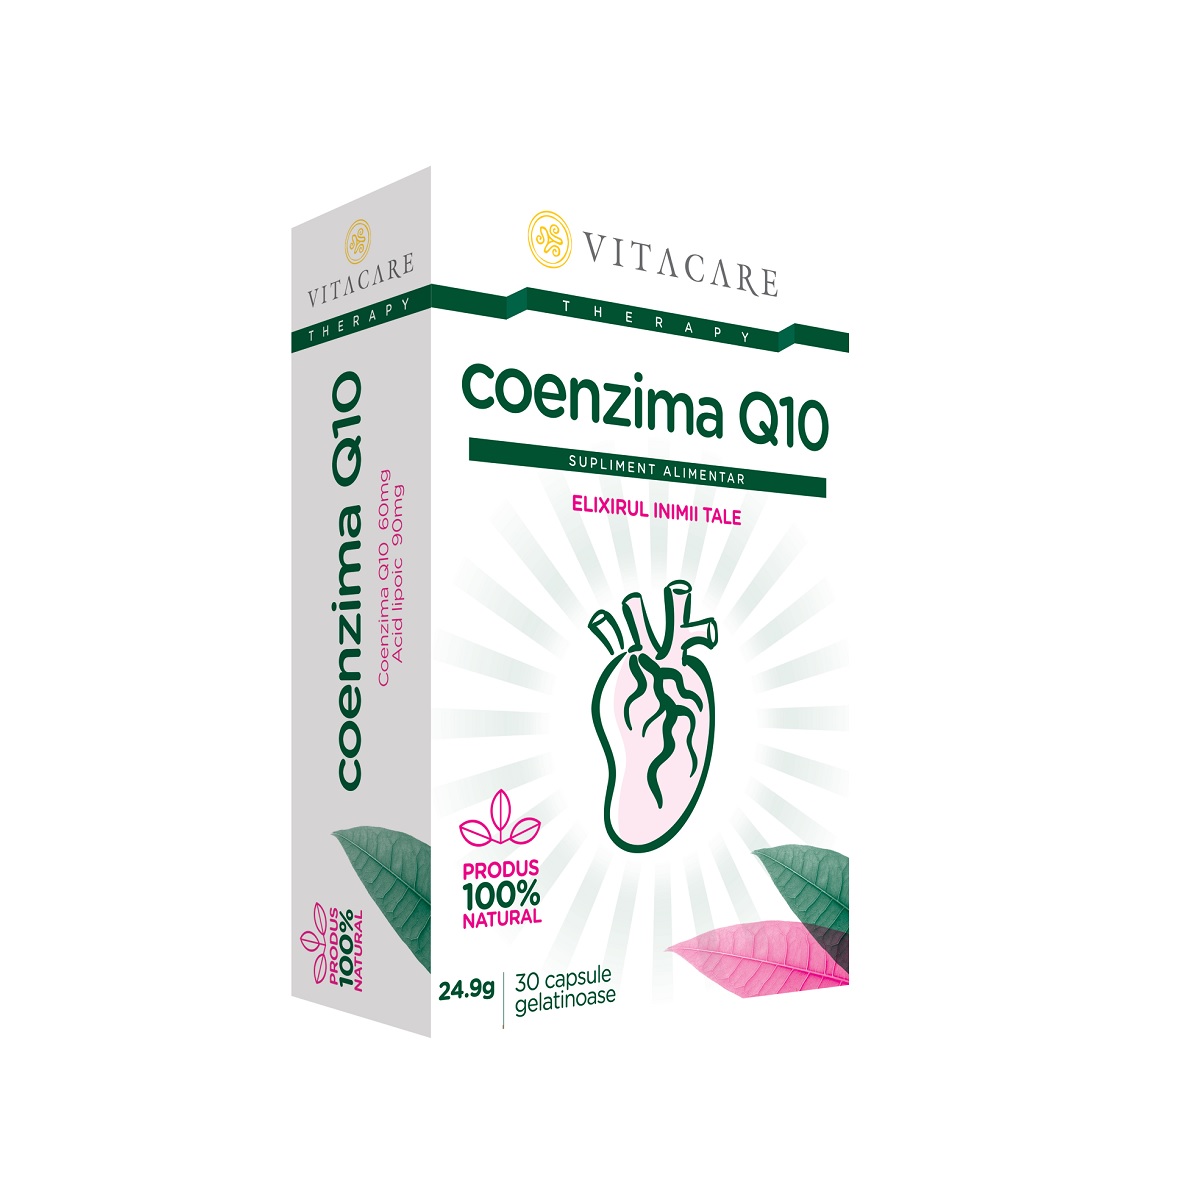  - Coenzima Q10 Forte, 30 capsule, Vitacare, sinapis.ro